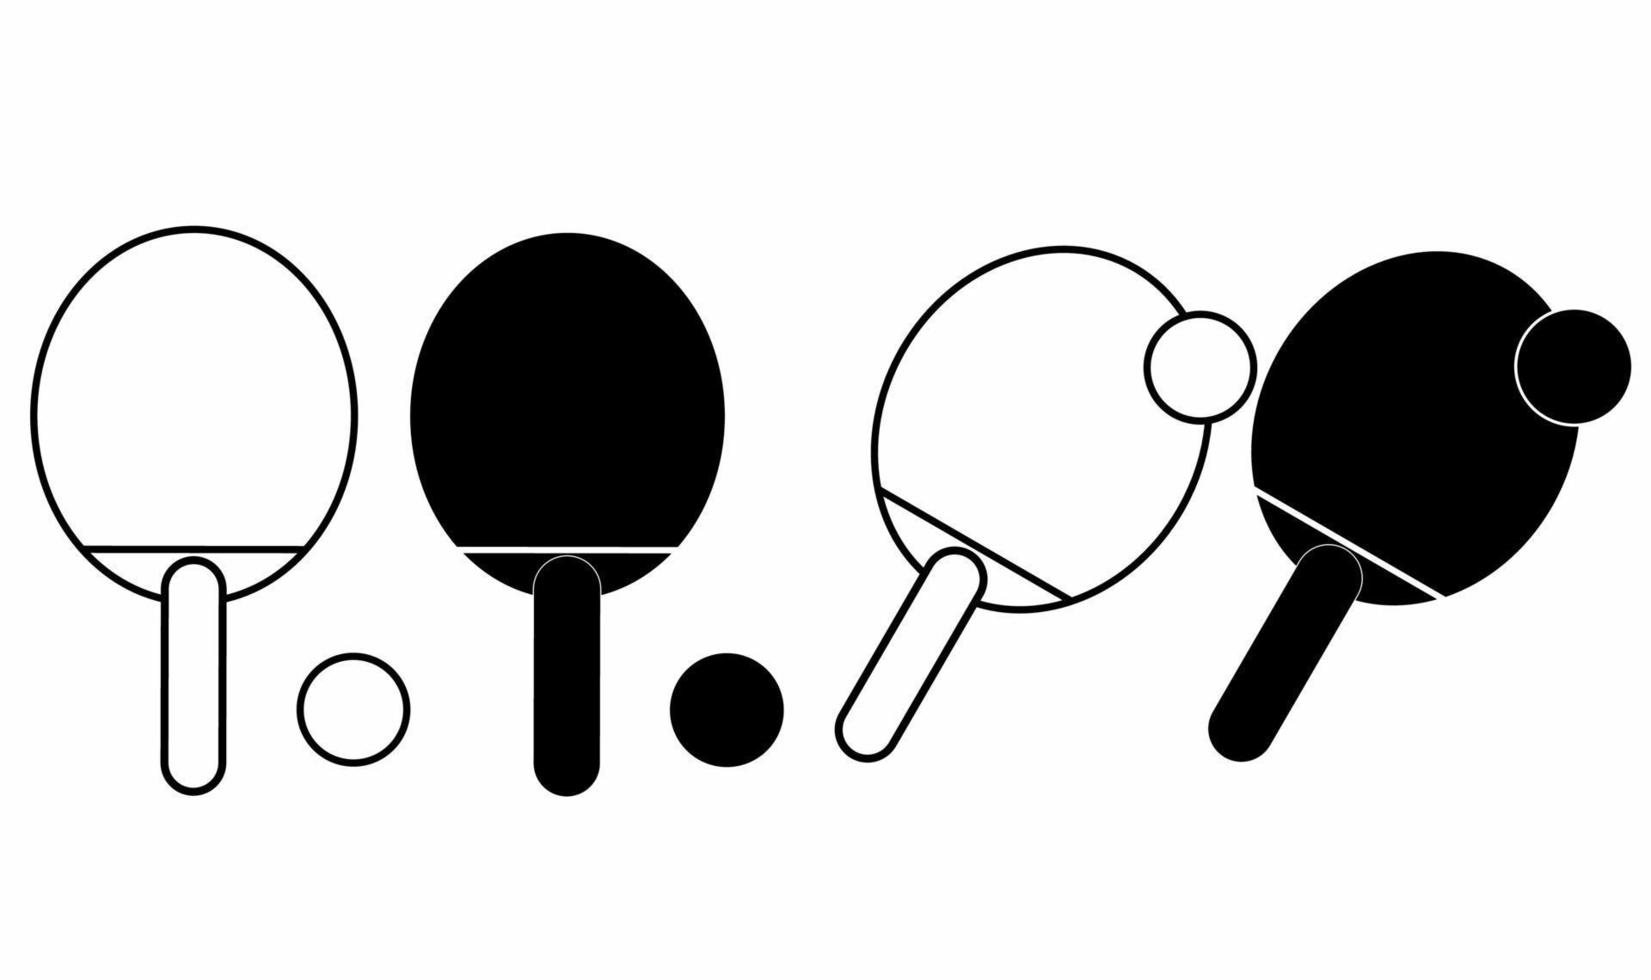 Contours silhouette raquettes de ping-pong et balle icon set isolé sur fond blanc vecteur